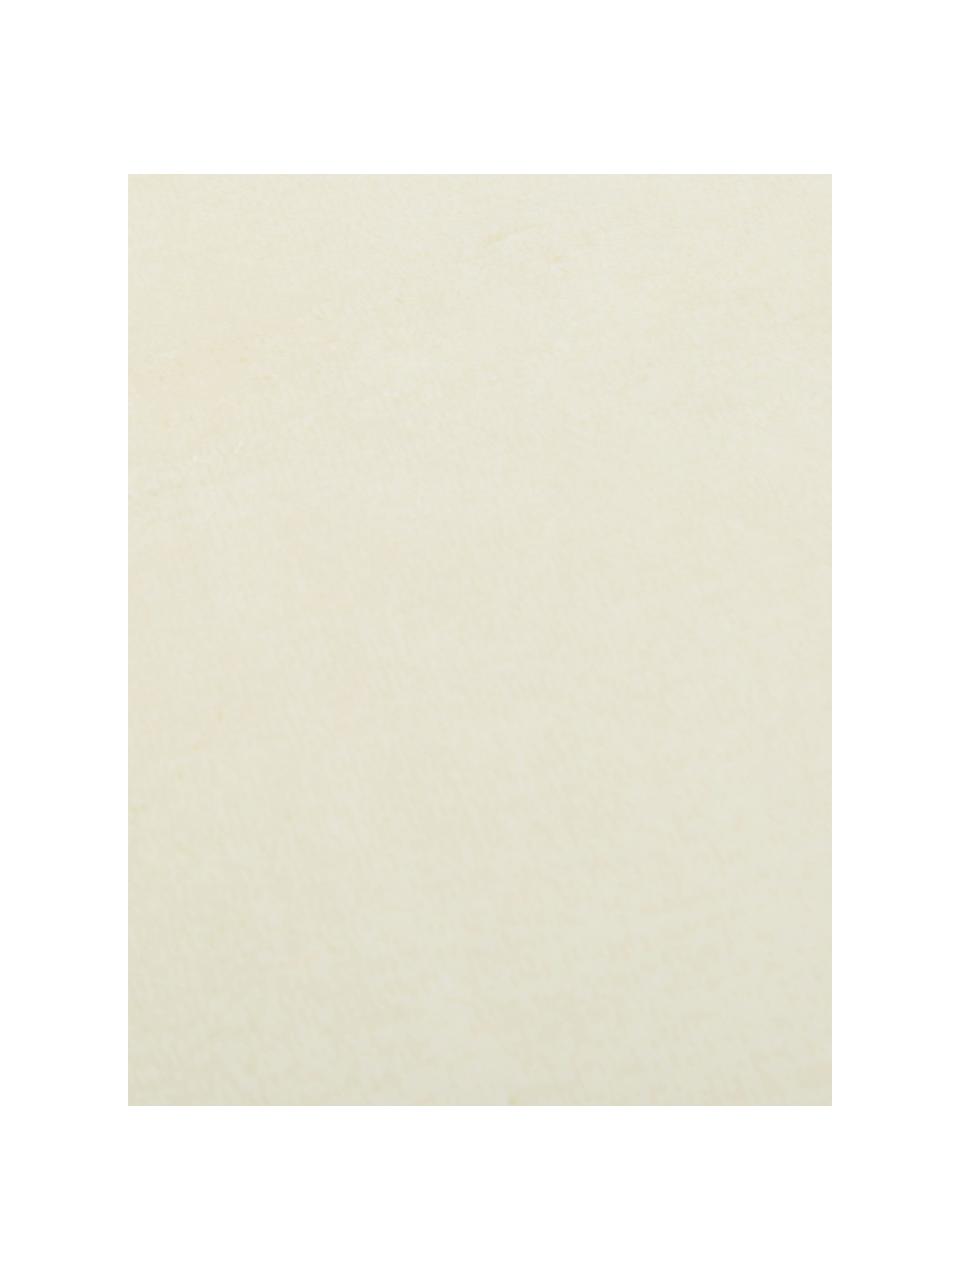 Plaid cocooning en polaire blanc crème Doudou, 100 % polyester, Blanc crème, larg. 130 x long. 160 cm